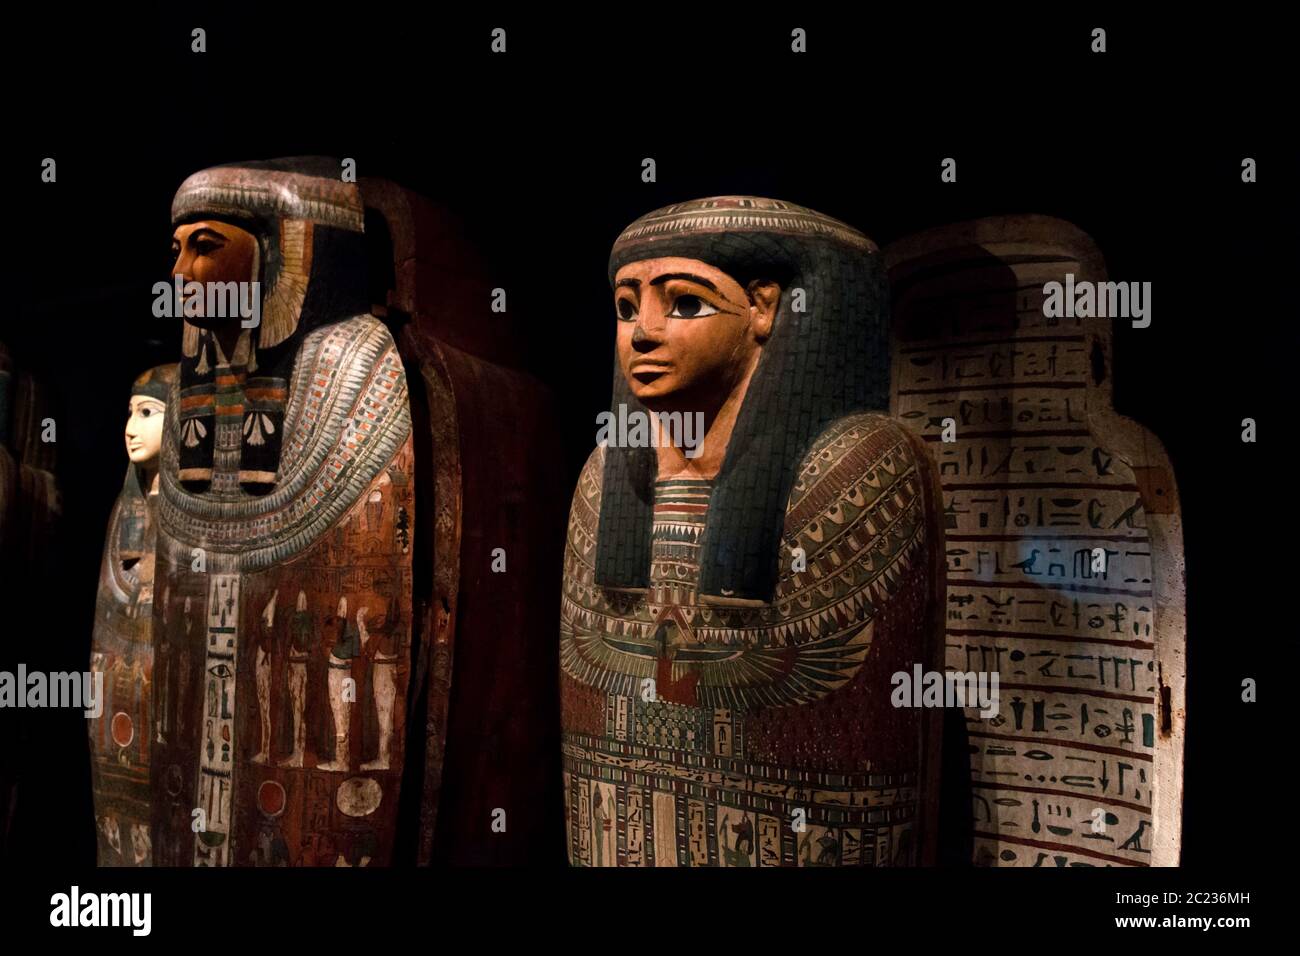 Leiden, pays-Bas 26 JANVIER 2019 : gros plan des anciens cercueils à l'exposition les dieux d'Égypte à Leiden. Sarcophage égyptien ancien. Banque D'Images